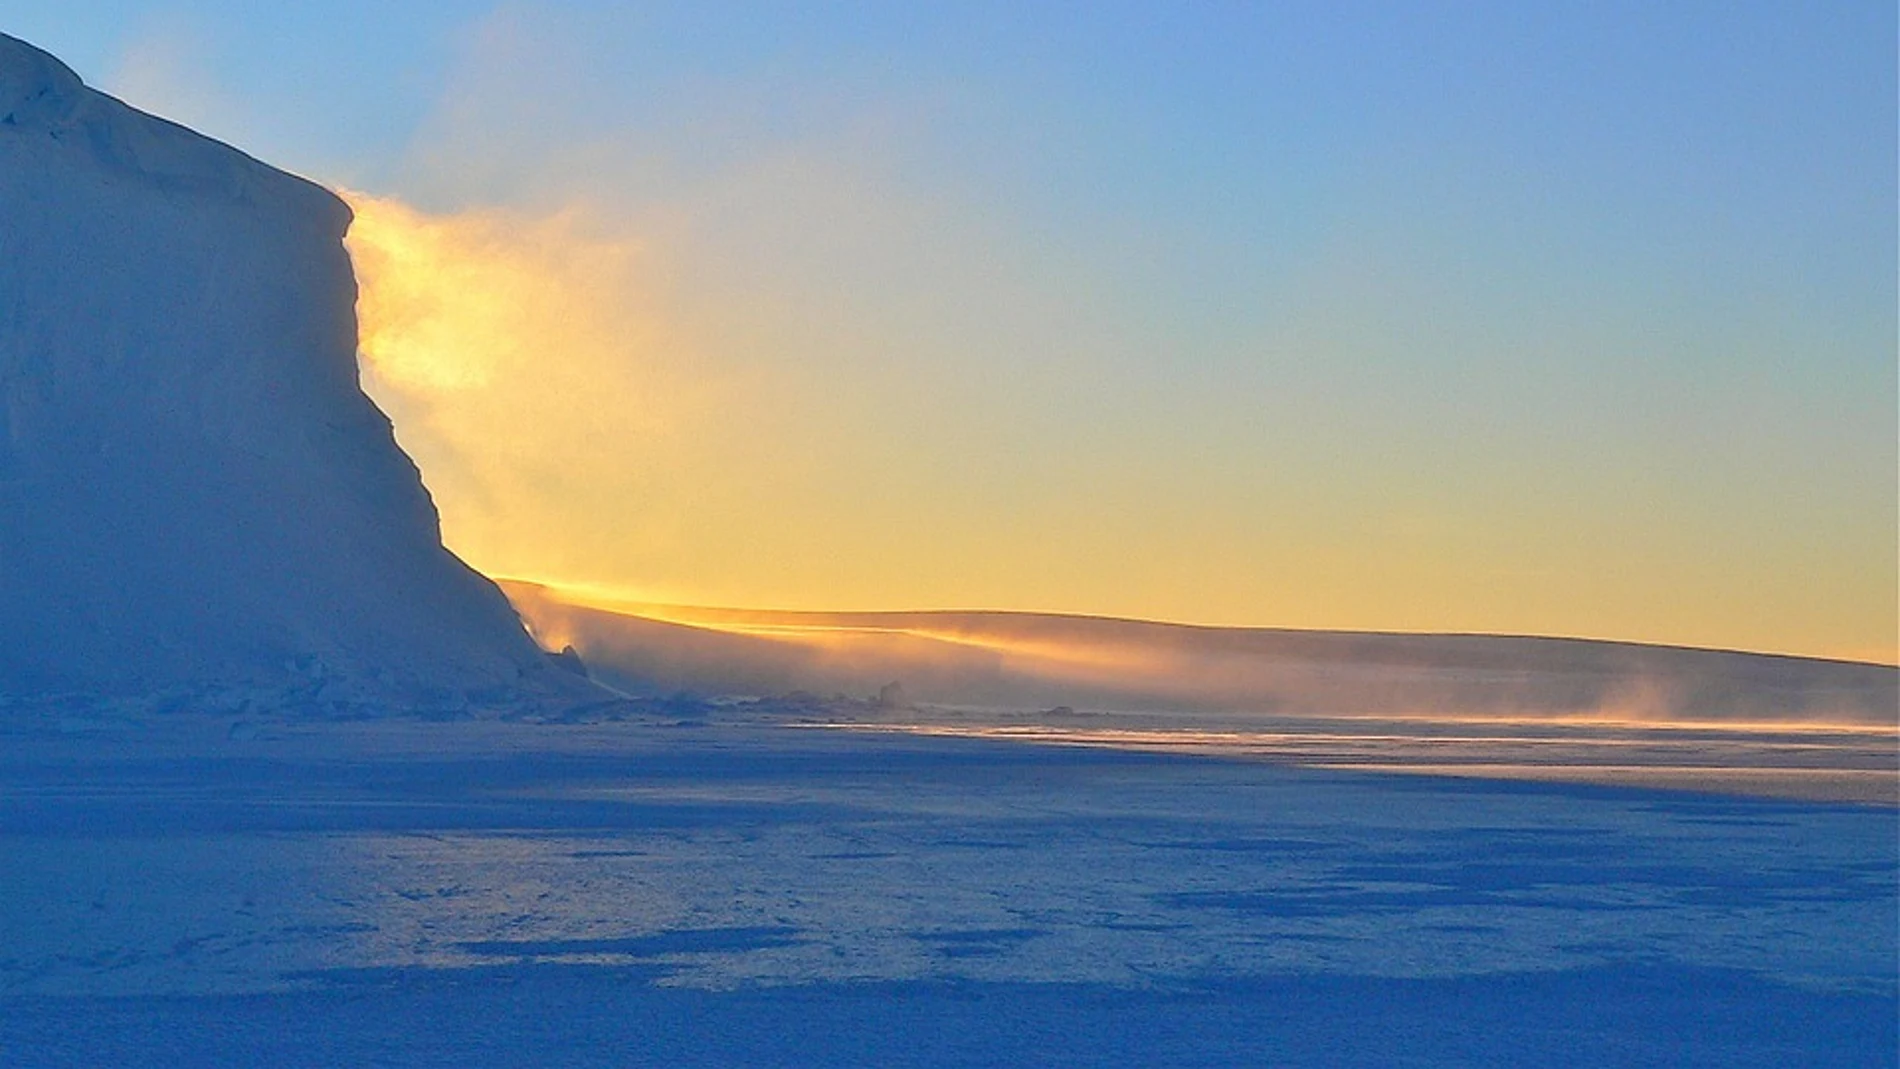 Confirmado un nuevo récord de calor en la Antártida con 18,3 grados